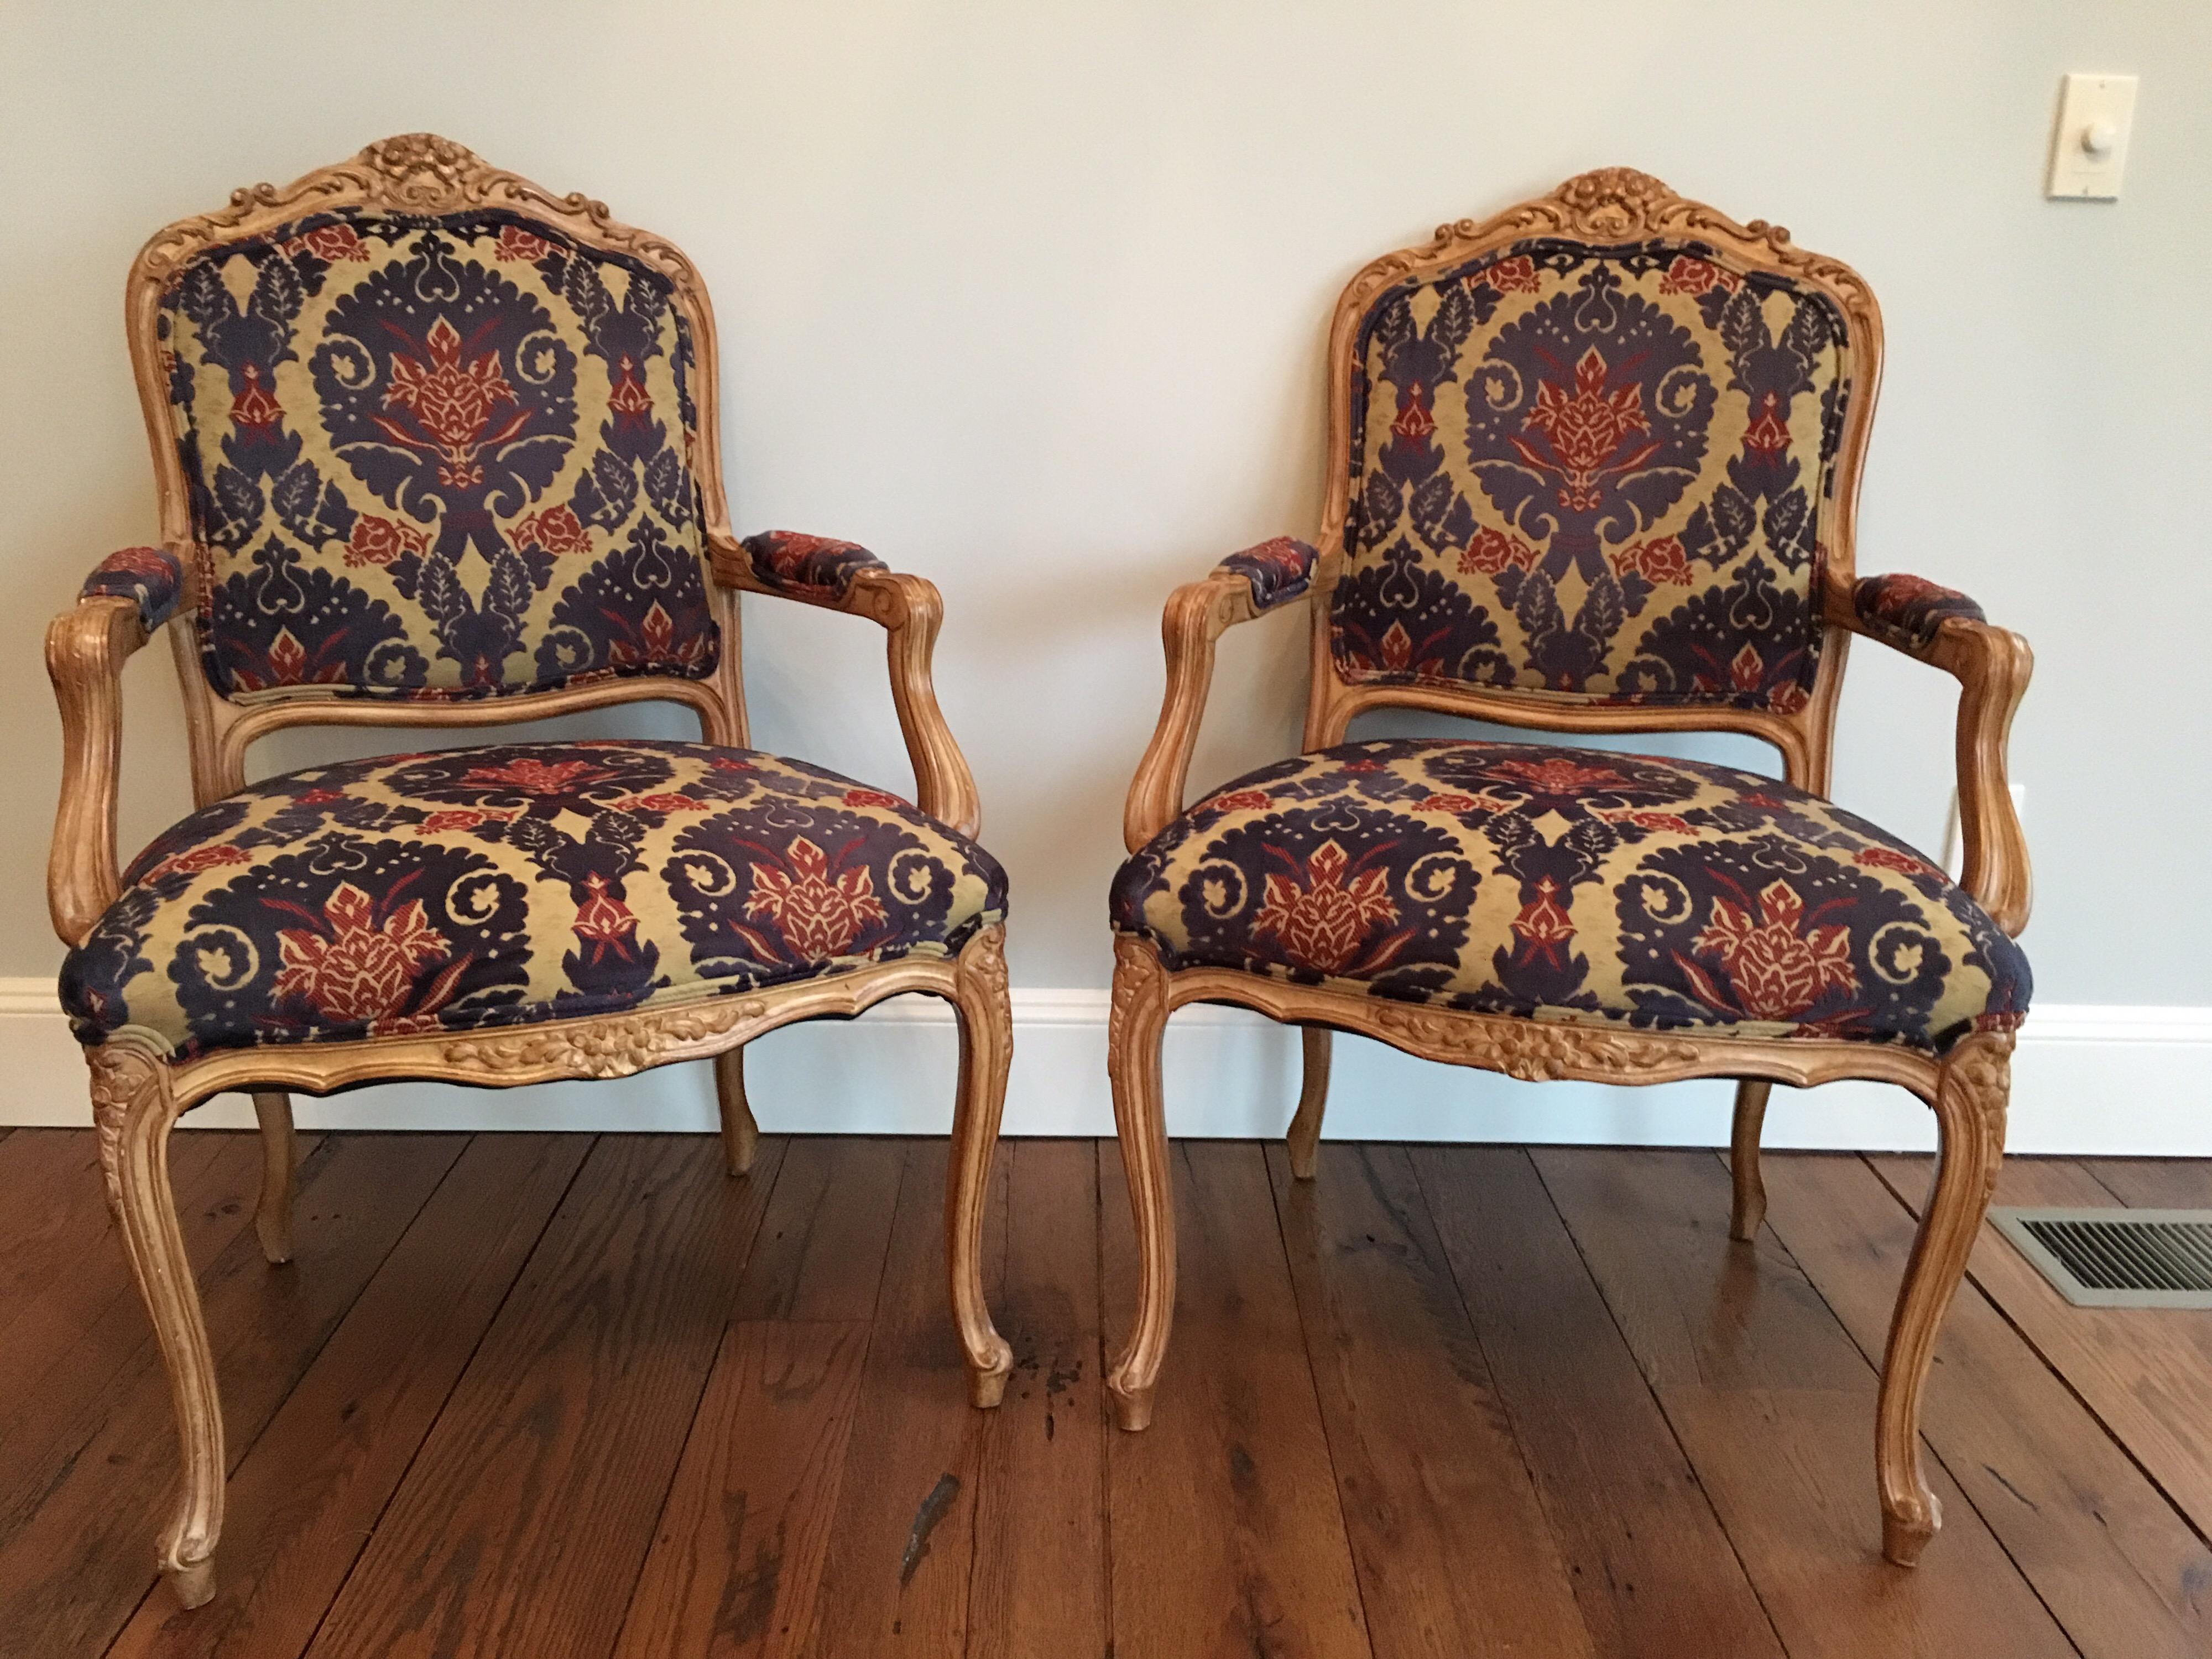 Ein Paar Sessel im Louis-XVI-Stil, bezogen mit zugeschnittenem Samtstoff. Geschnitztes Laub- und Muschelmotiv an der Oberseite. Sehr guter Zustand. Zwei kleine Tintenflecken auf der Sitzfläche eines Stuhls.